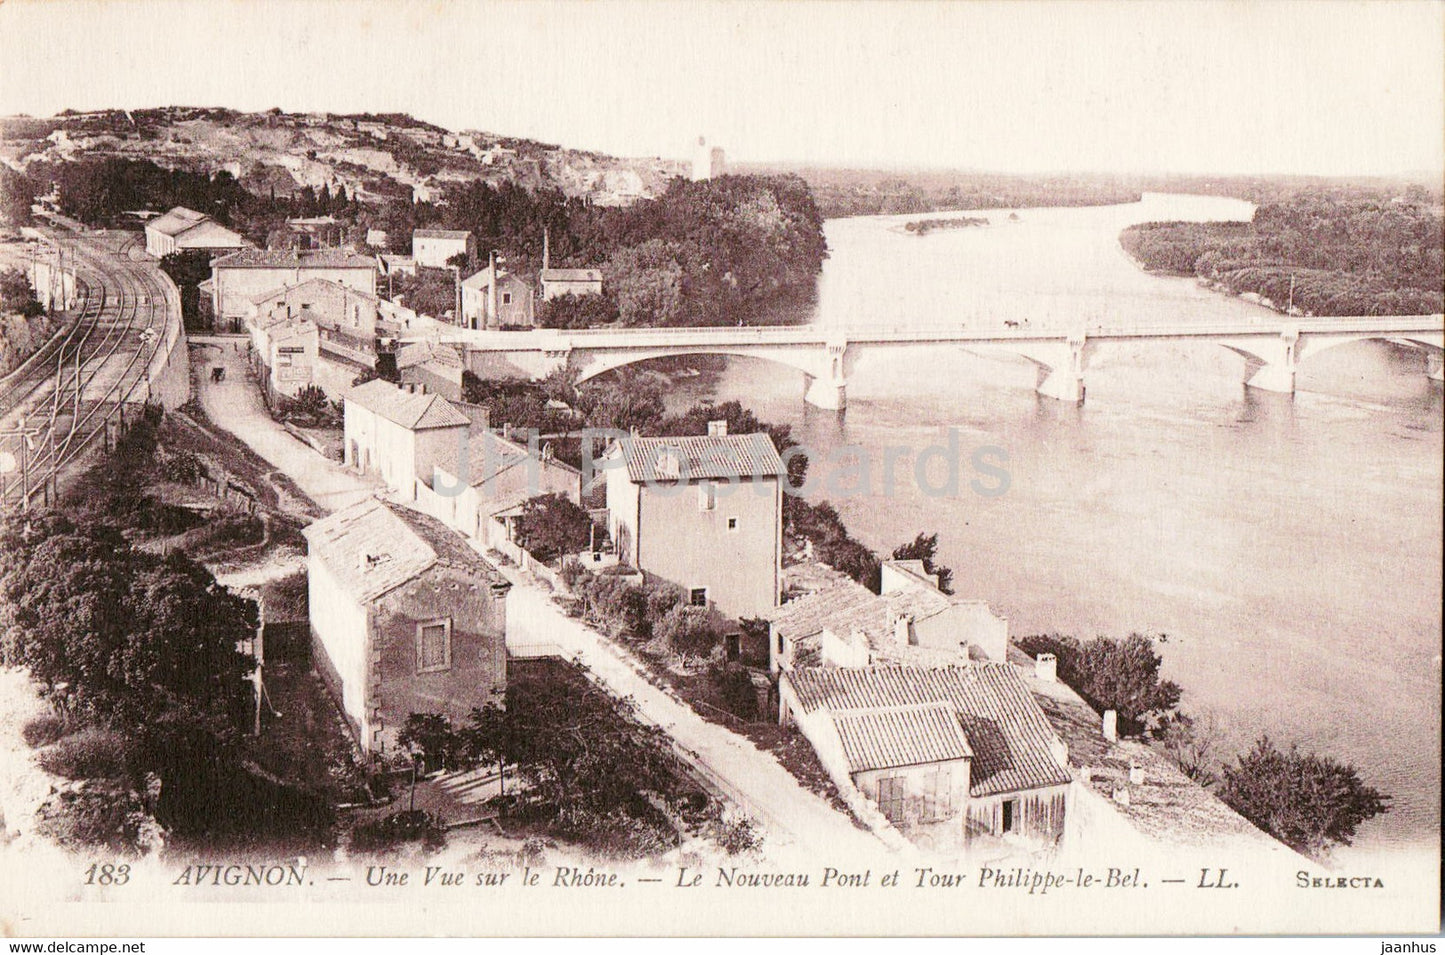 Avignon - Un vue sur Rhone - Le Nouveau Pont et Tour Philippe le Bel - bridge - 183 - old postcard - France - unused - JH Postcards